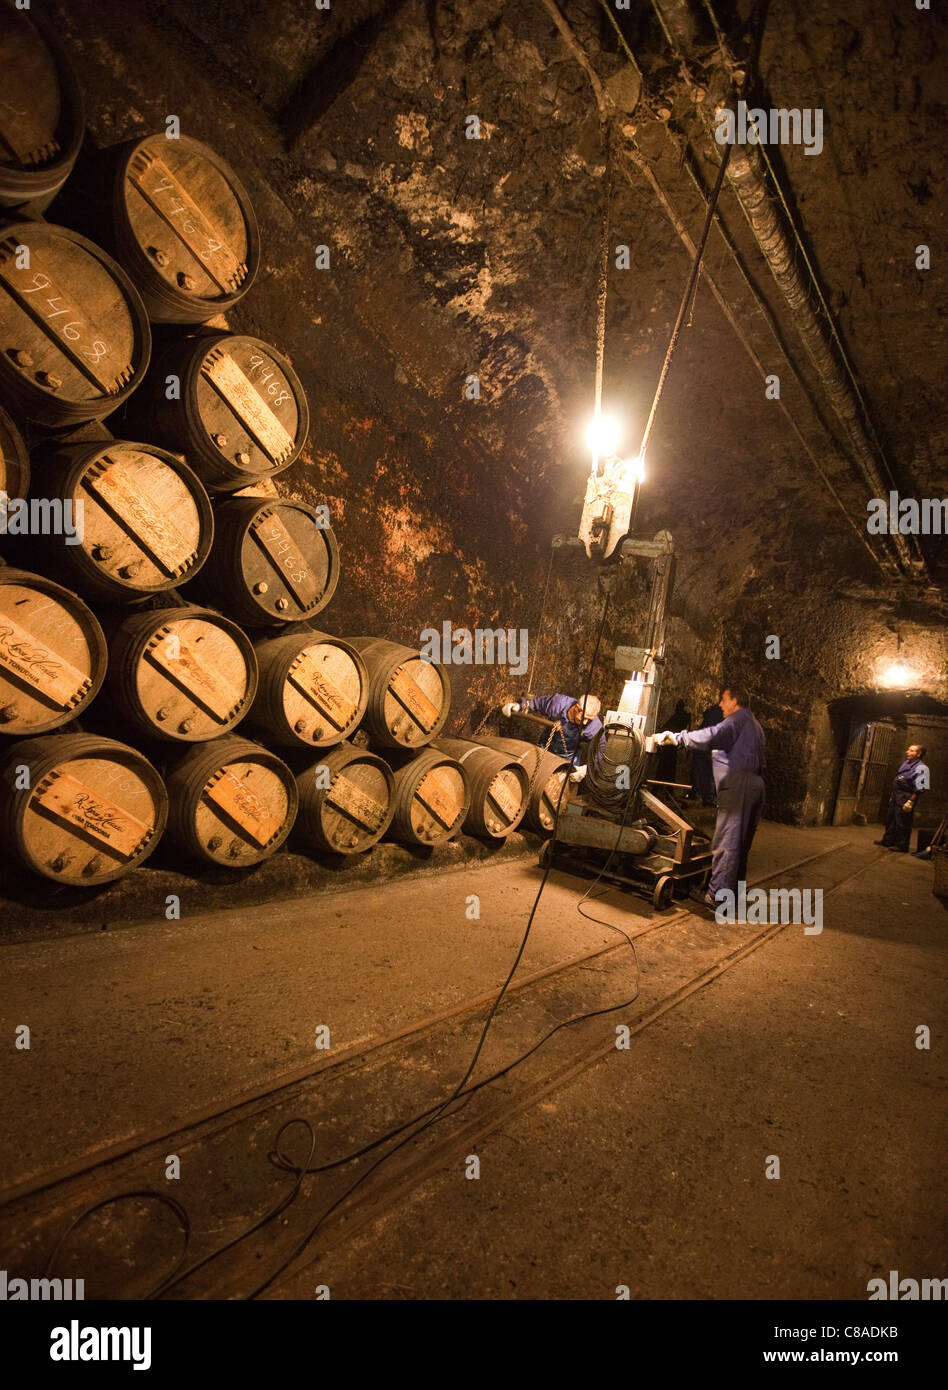 Lopez de Heredia Vina Tondonia Bodega cellars with oak barrels and workers, in Haro La Rioja Spain 110583 Spain Stock Photo